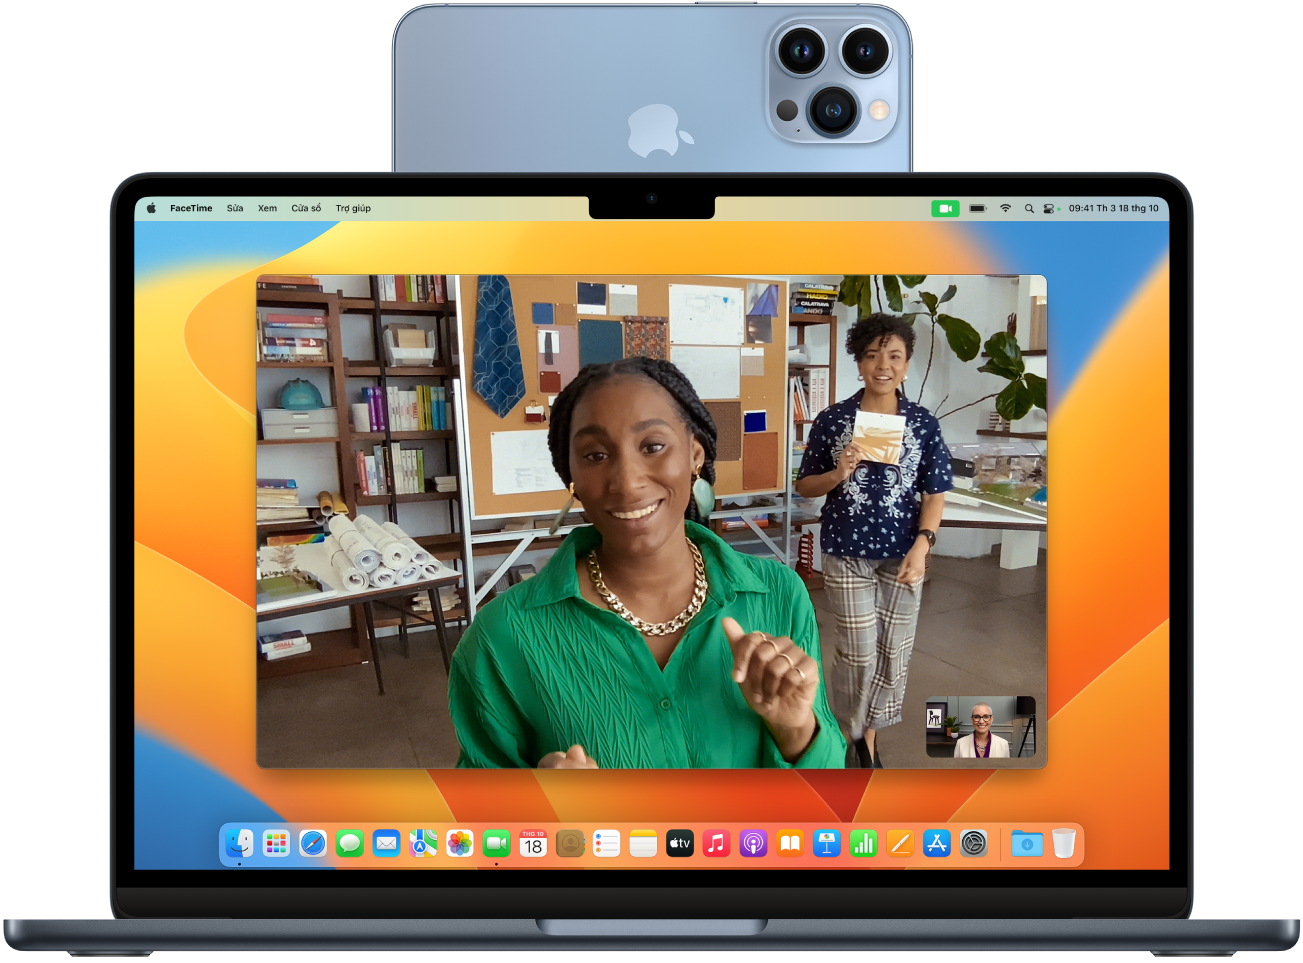 Một máy Mac với một iPhone đang được sử dụng làm webcam được gắn ở cạnh trên của màn hình. Hình ảnh từ camera iPhone hiển thị trên màn hình của máy Mac.